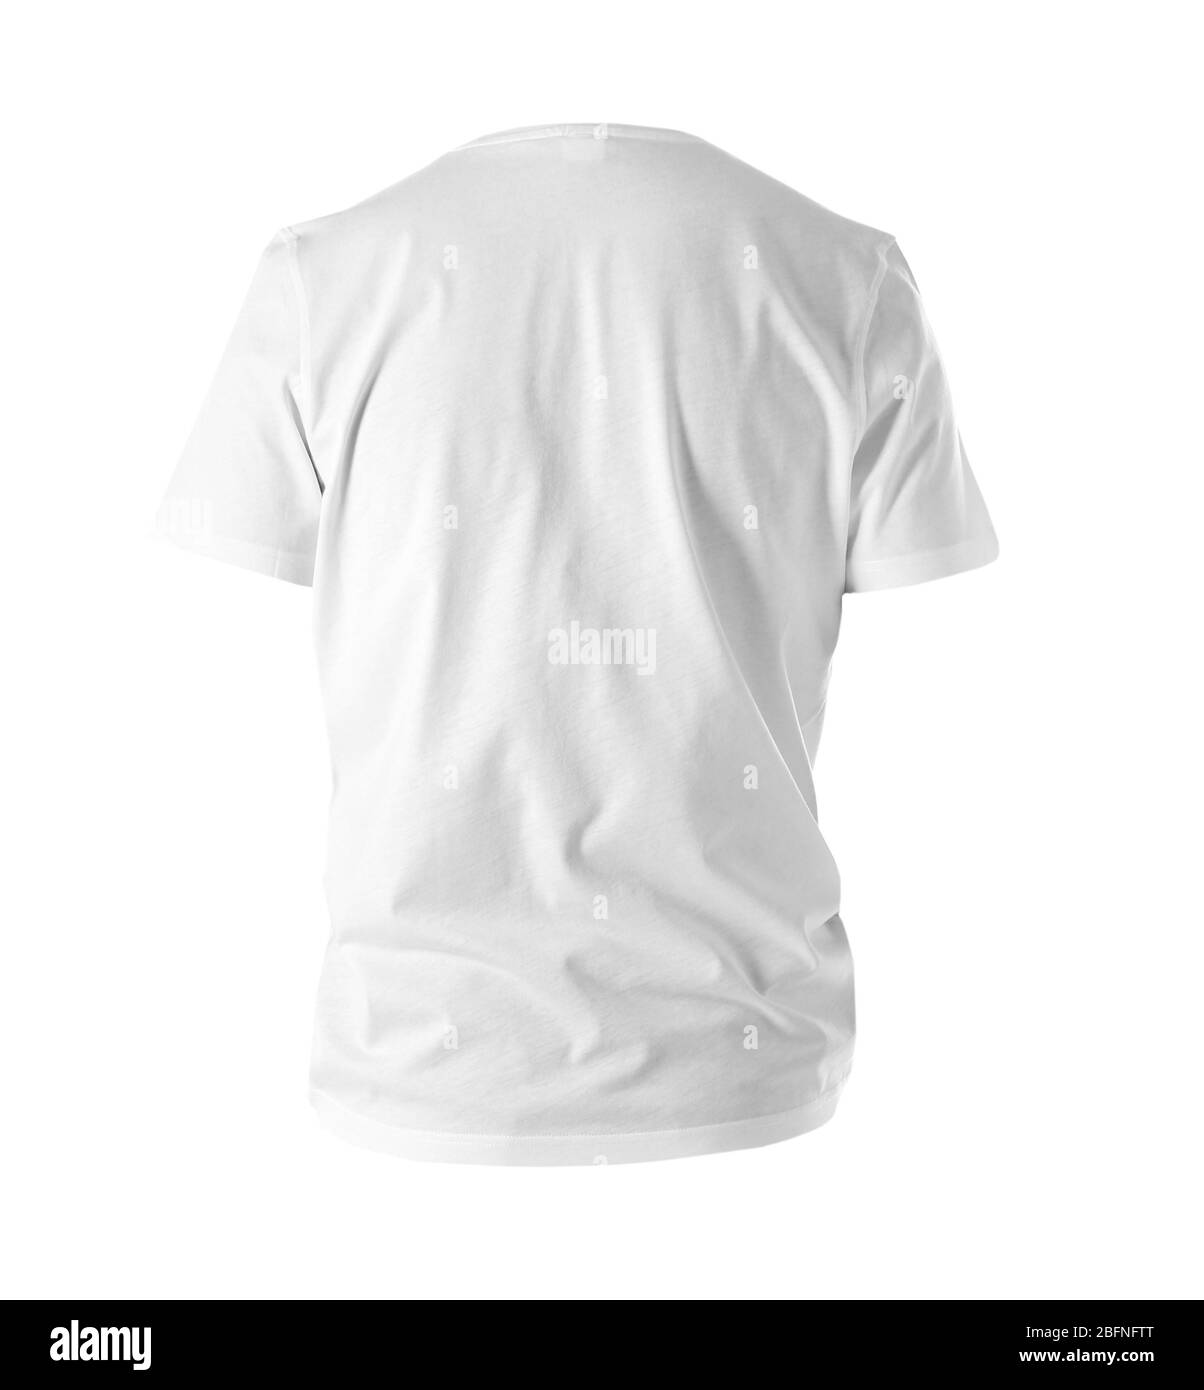 Rückansicht des T-Shirts auf weißem Hintergrund Stockfoto